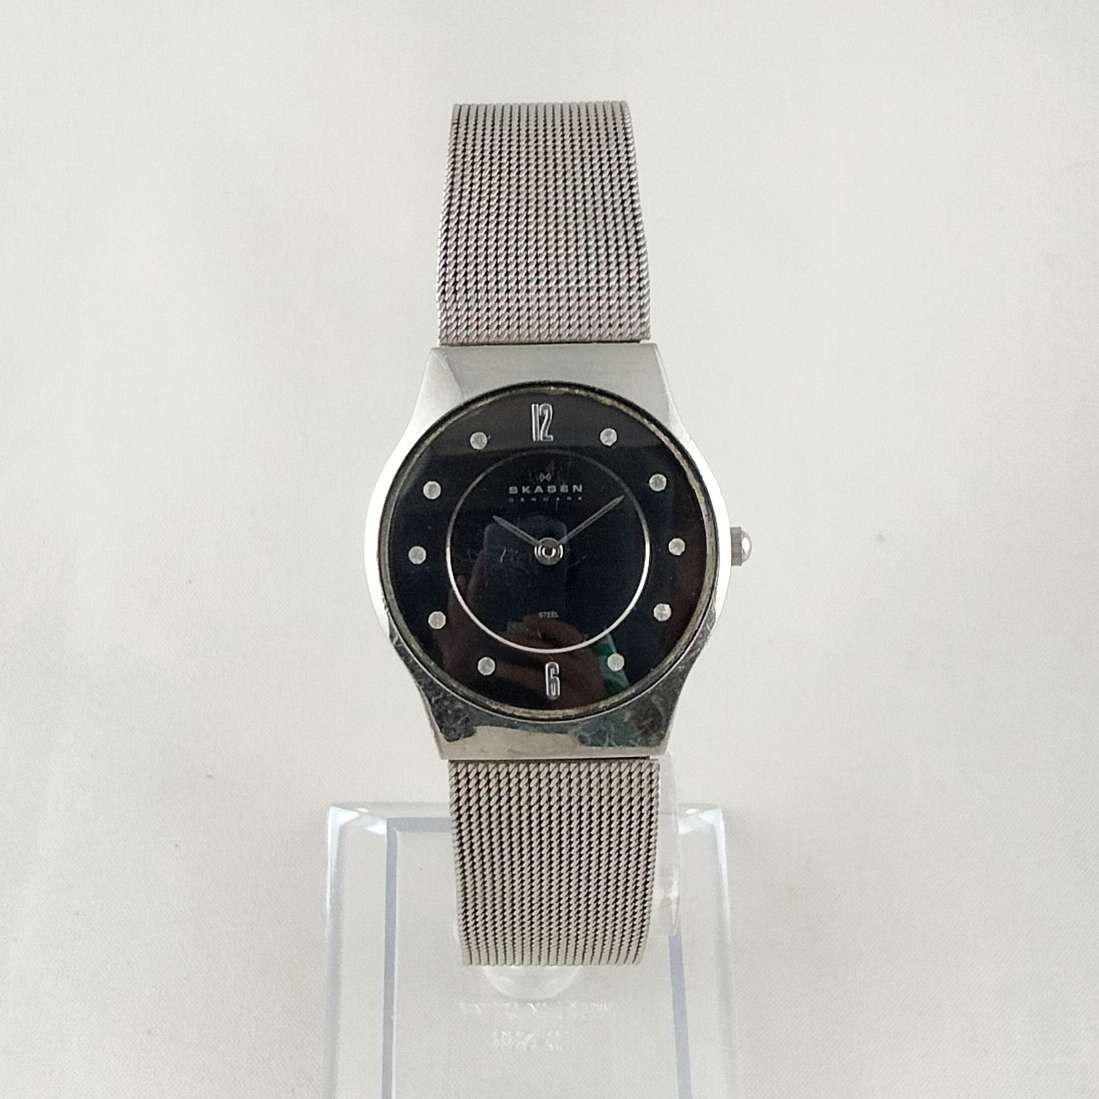 Skagen Unisex Watch, Black Dial with Jewel Details, Mesh Strap